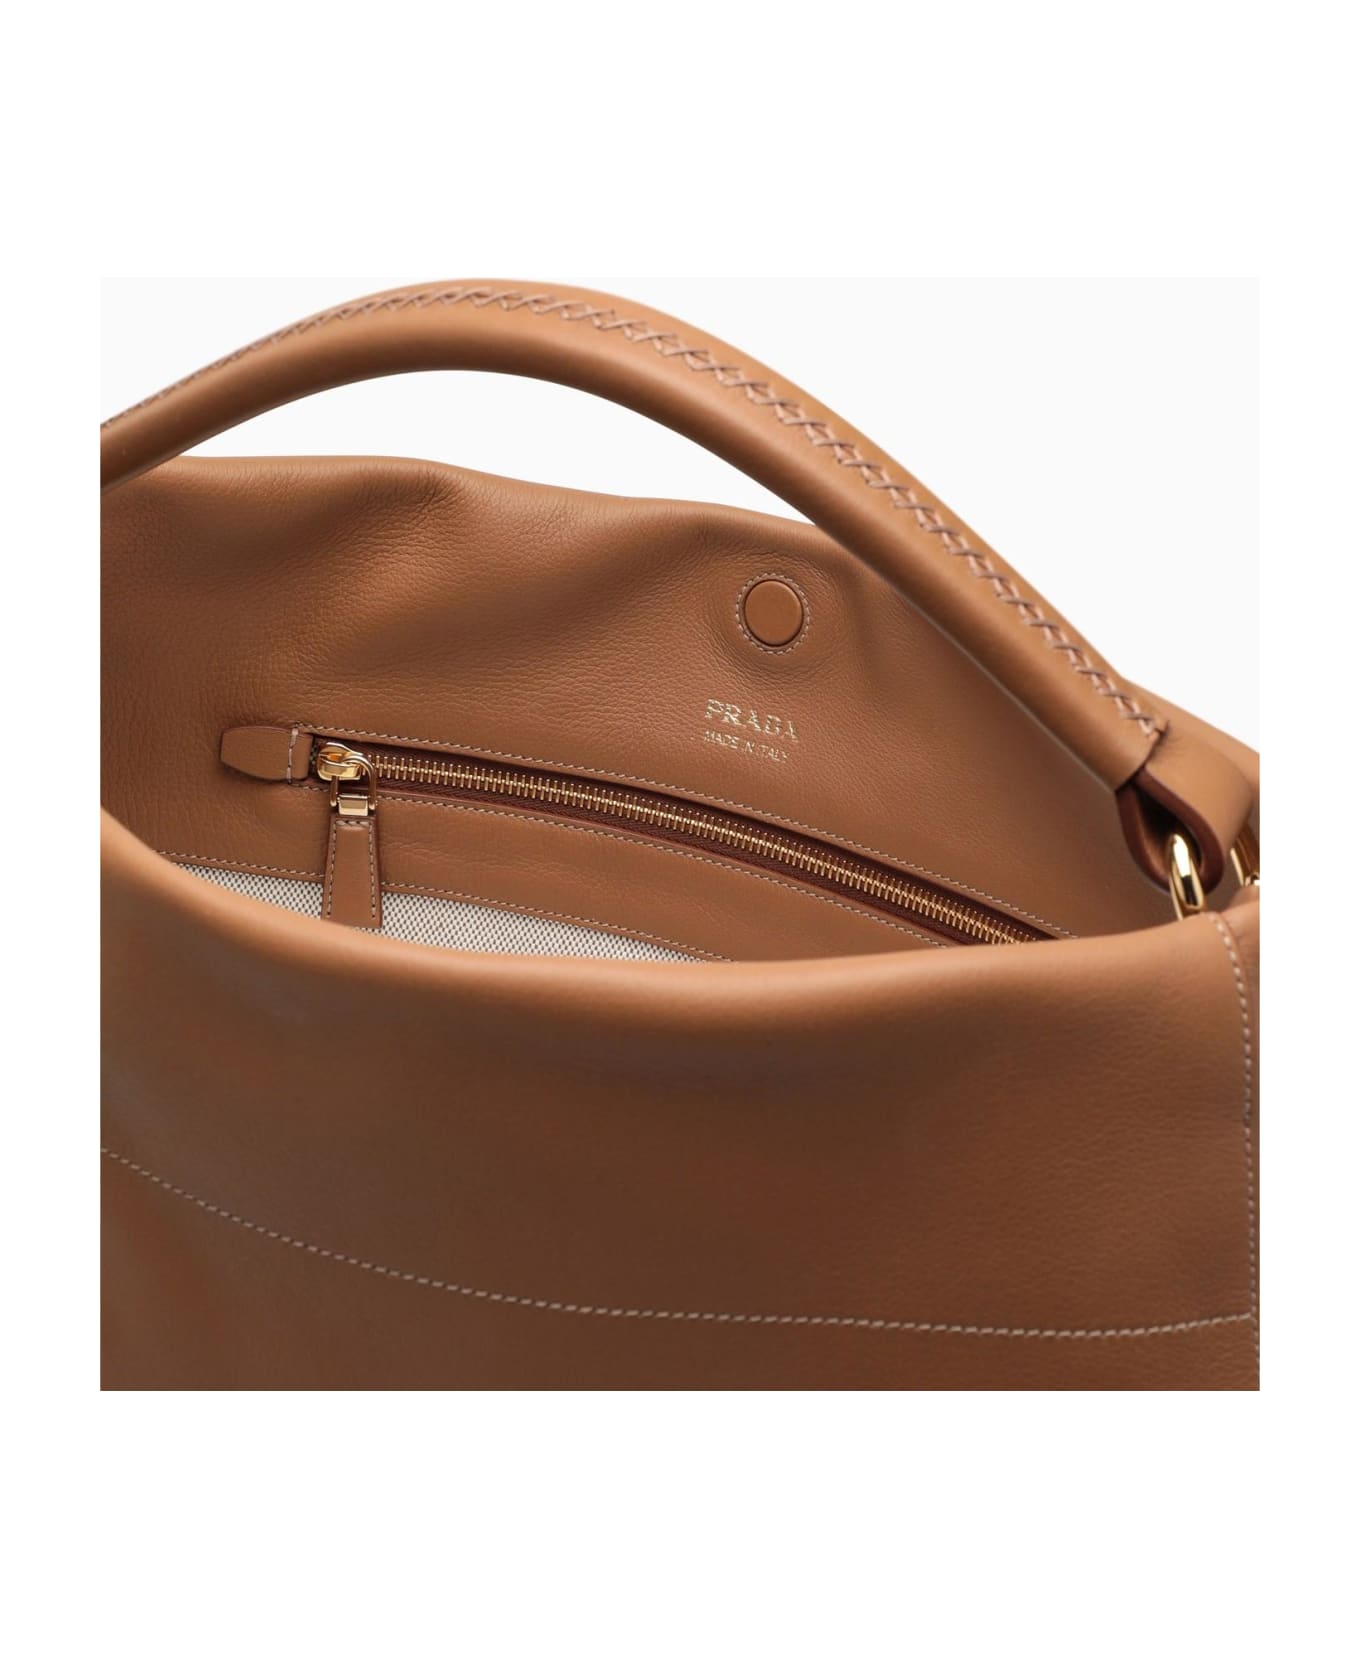 Prada Large Caramel-coloured Leather Shoulder Bag - CARAMEL 0 トートバッグ